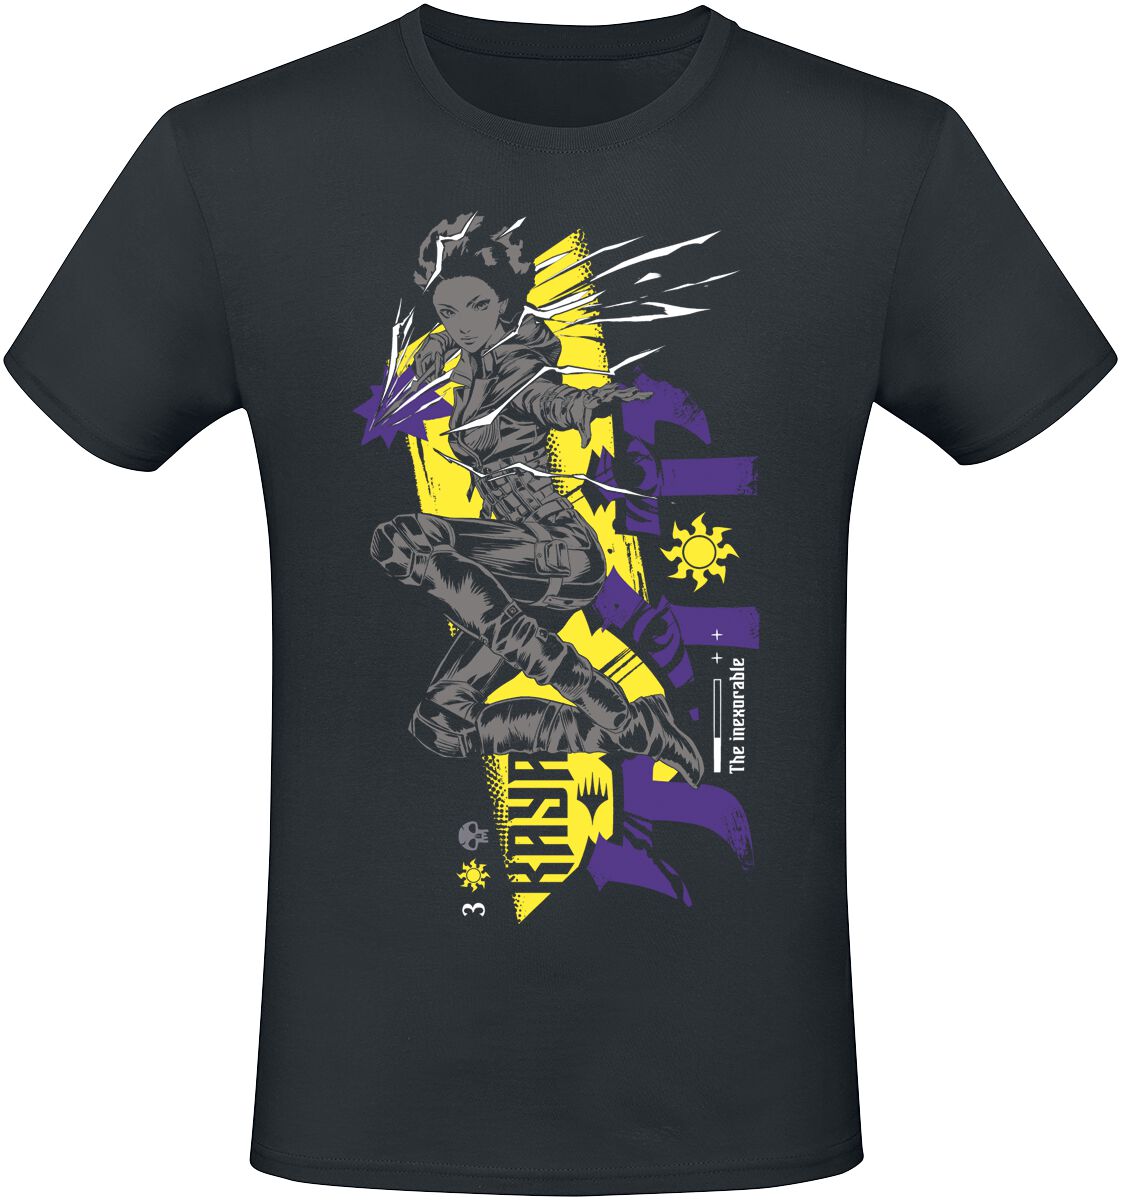 Magic: The Gathering - Gaming T-Shirt - Kaya - S bis XXL - für Männer - Größe S - schwarz  - EMP exklusives Merchandise!